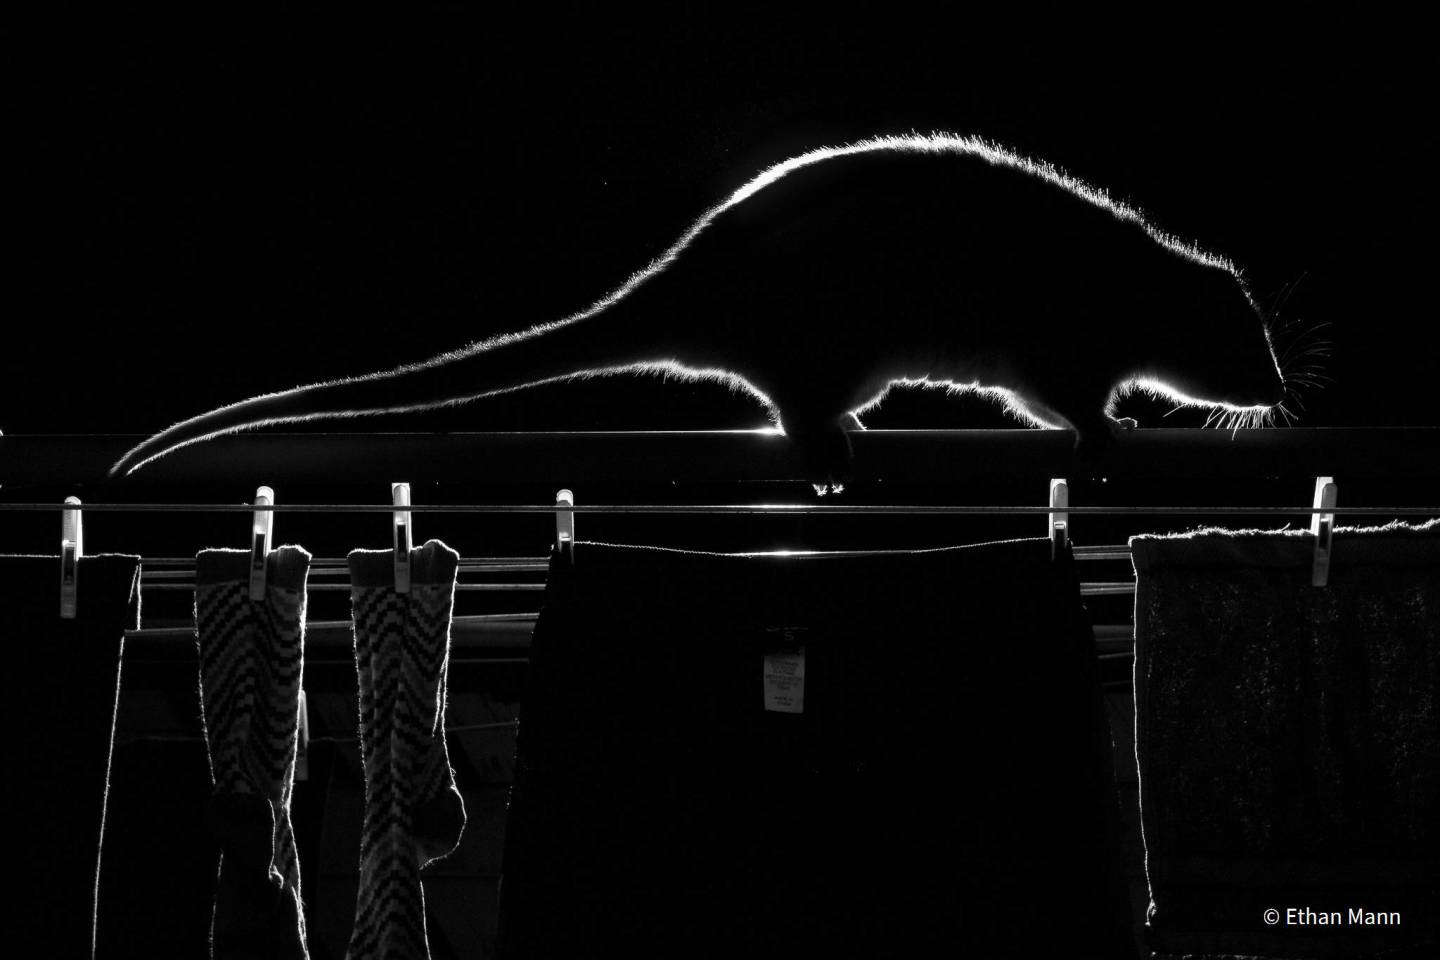 Шорт-лист - Монохромный. "Ночь стирки". Деревня Габи-габи, регион Саншайн-Кост, штат Квинсленд, Австралия. Фото: Ethan Mann